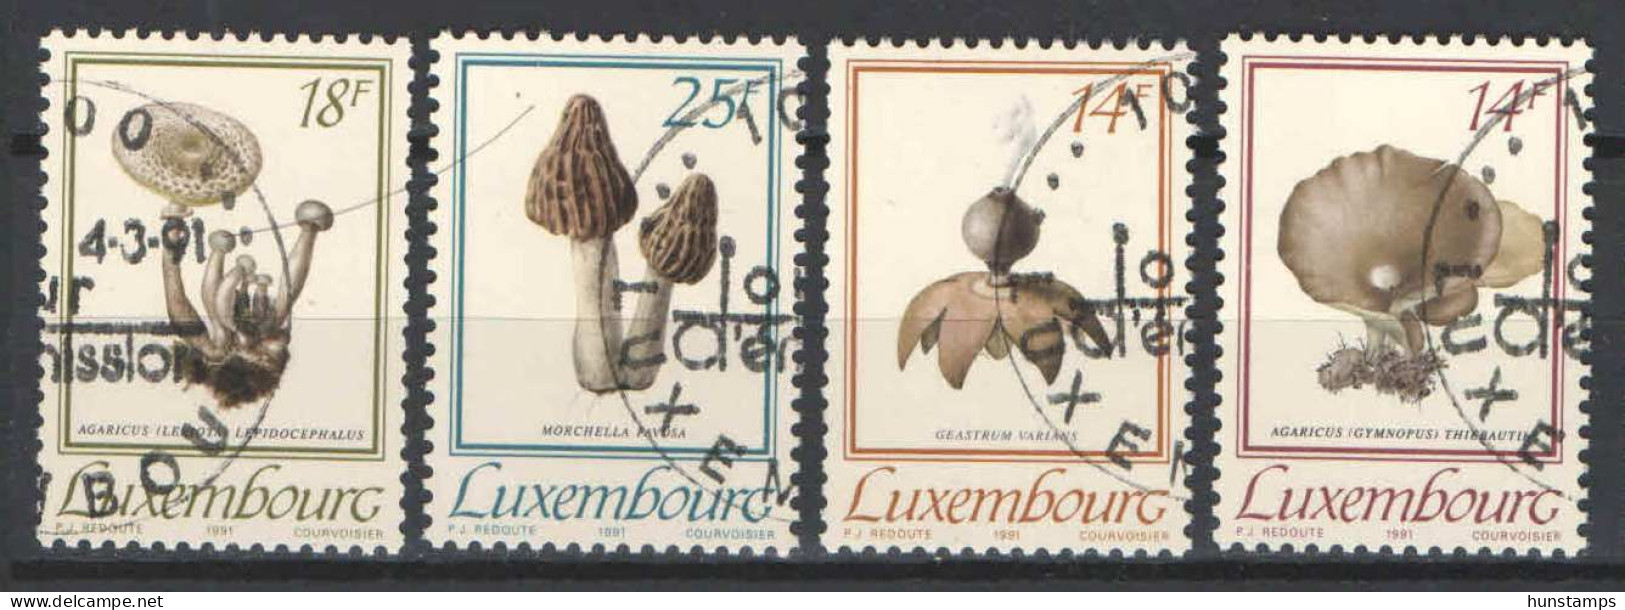 Luxembourg 1991. Mushrooms Nice Set, Used - Usati